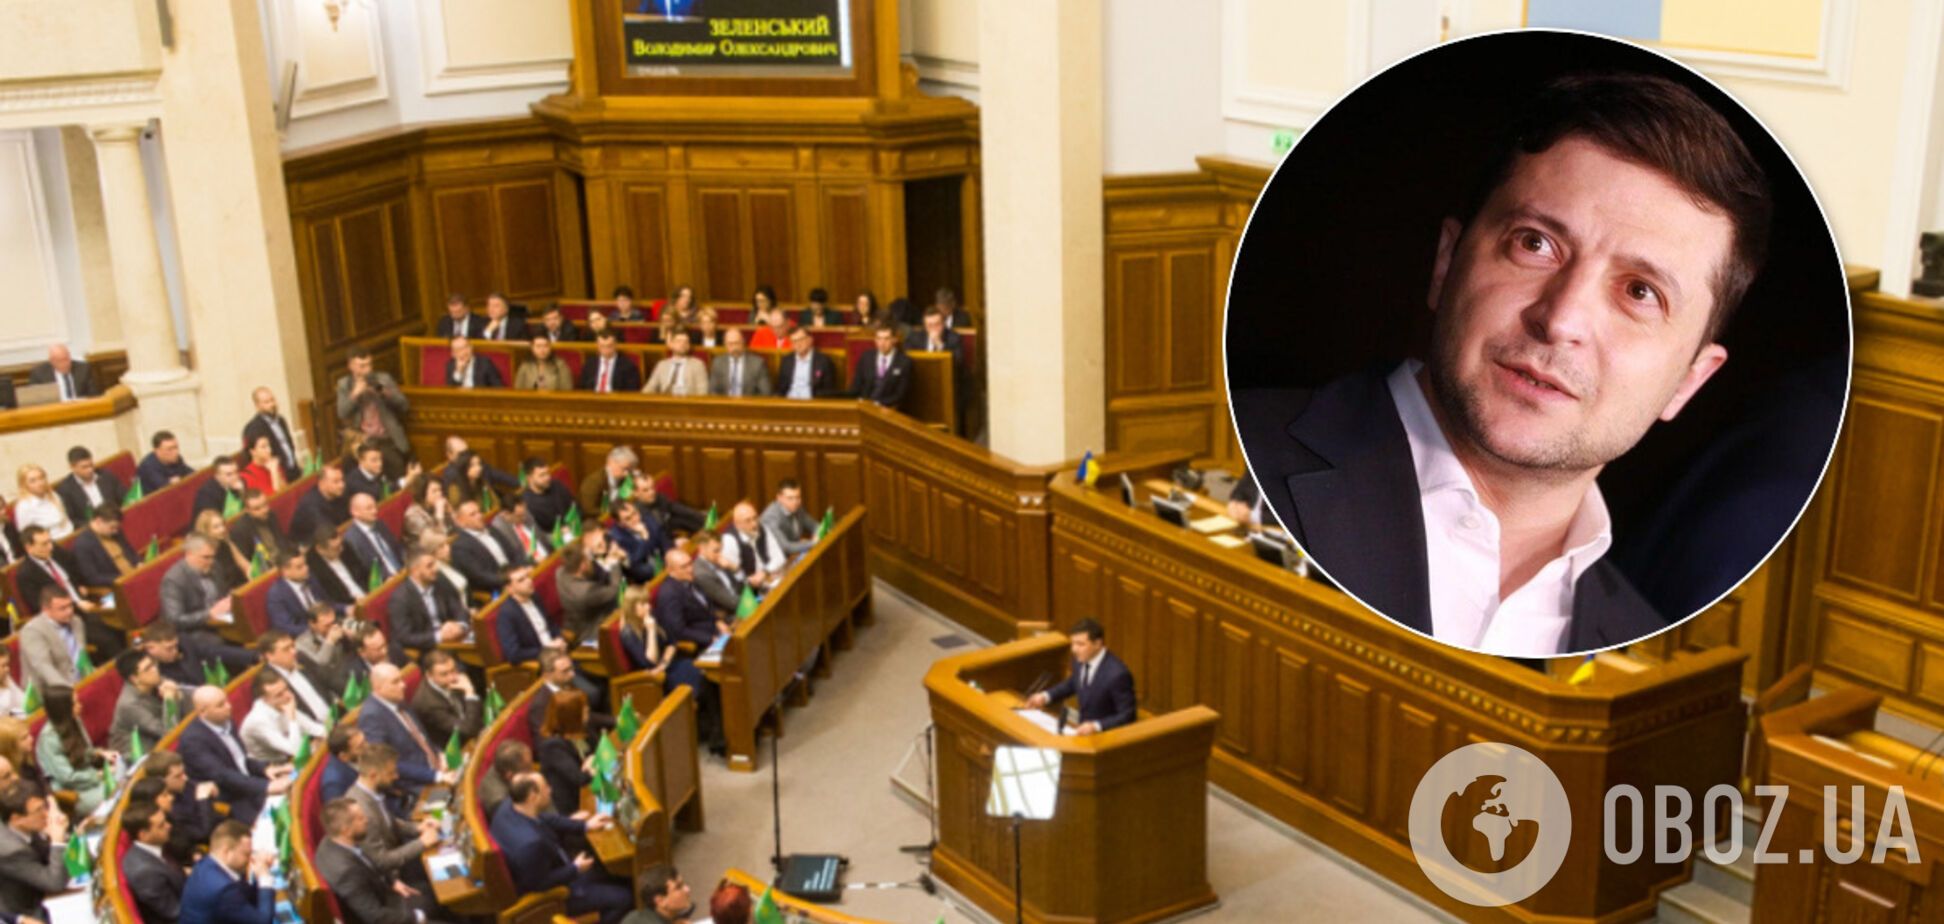 Зеленский прибыл на заседание фракции 'Слуга народа': все важные месседжи встречи. Фото и видео